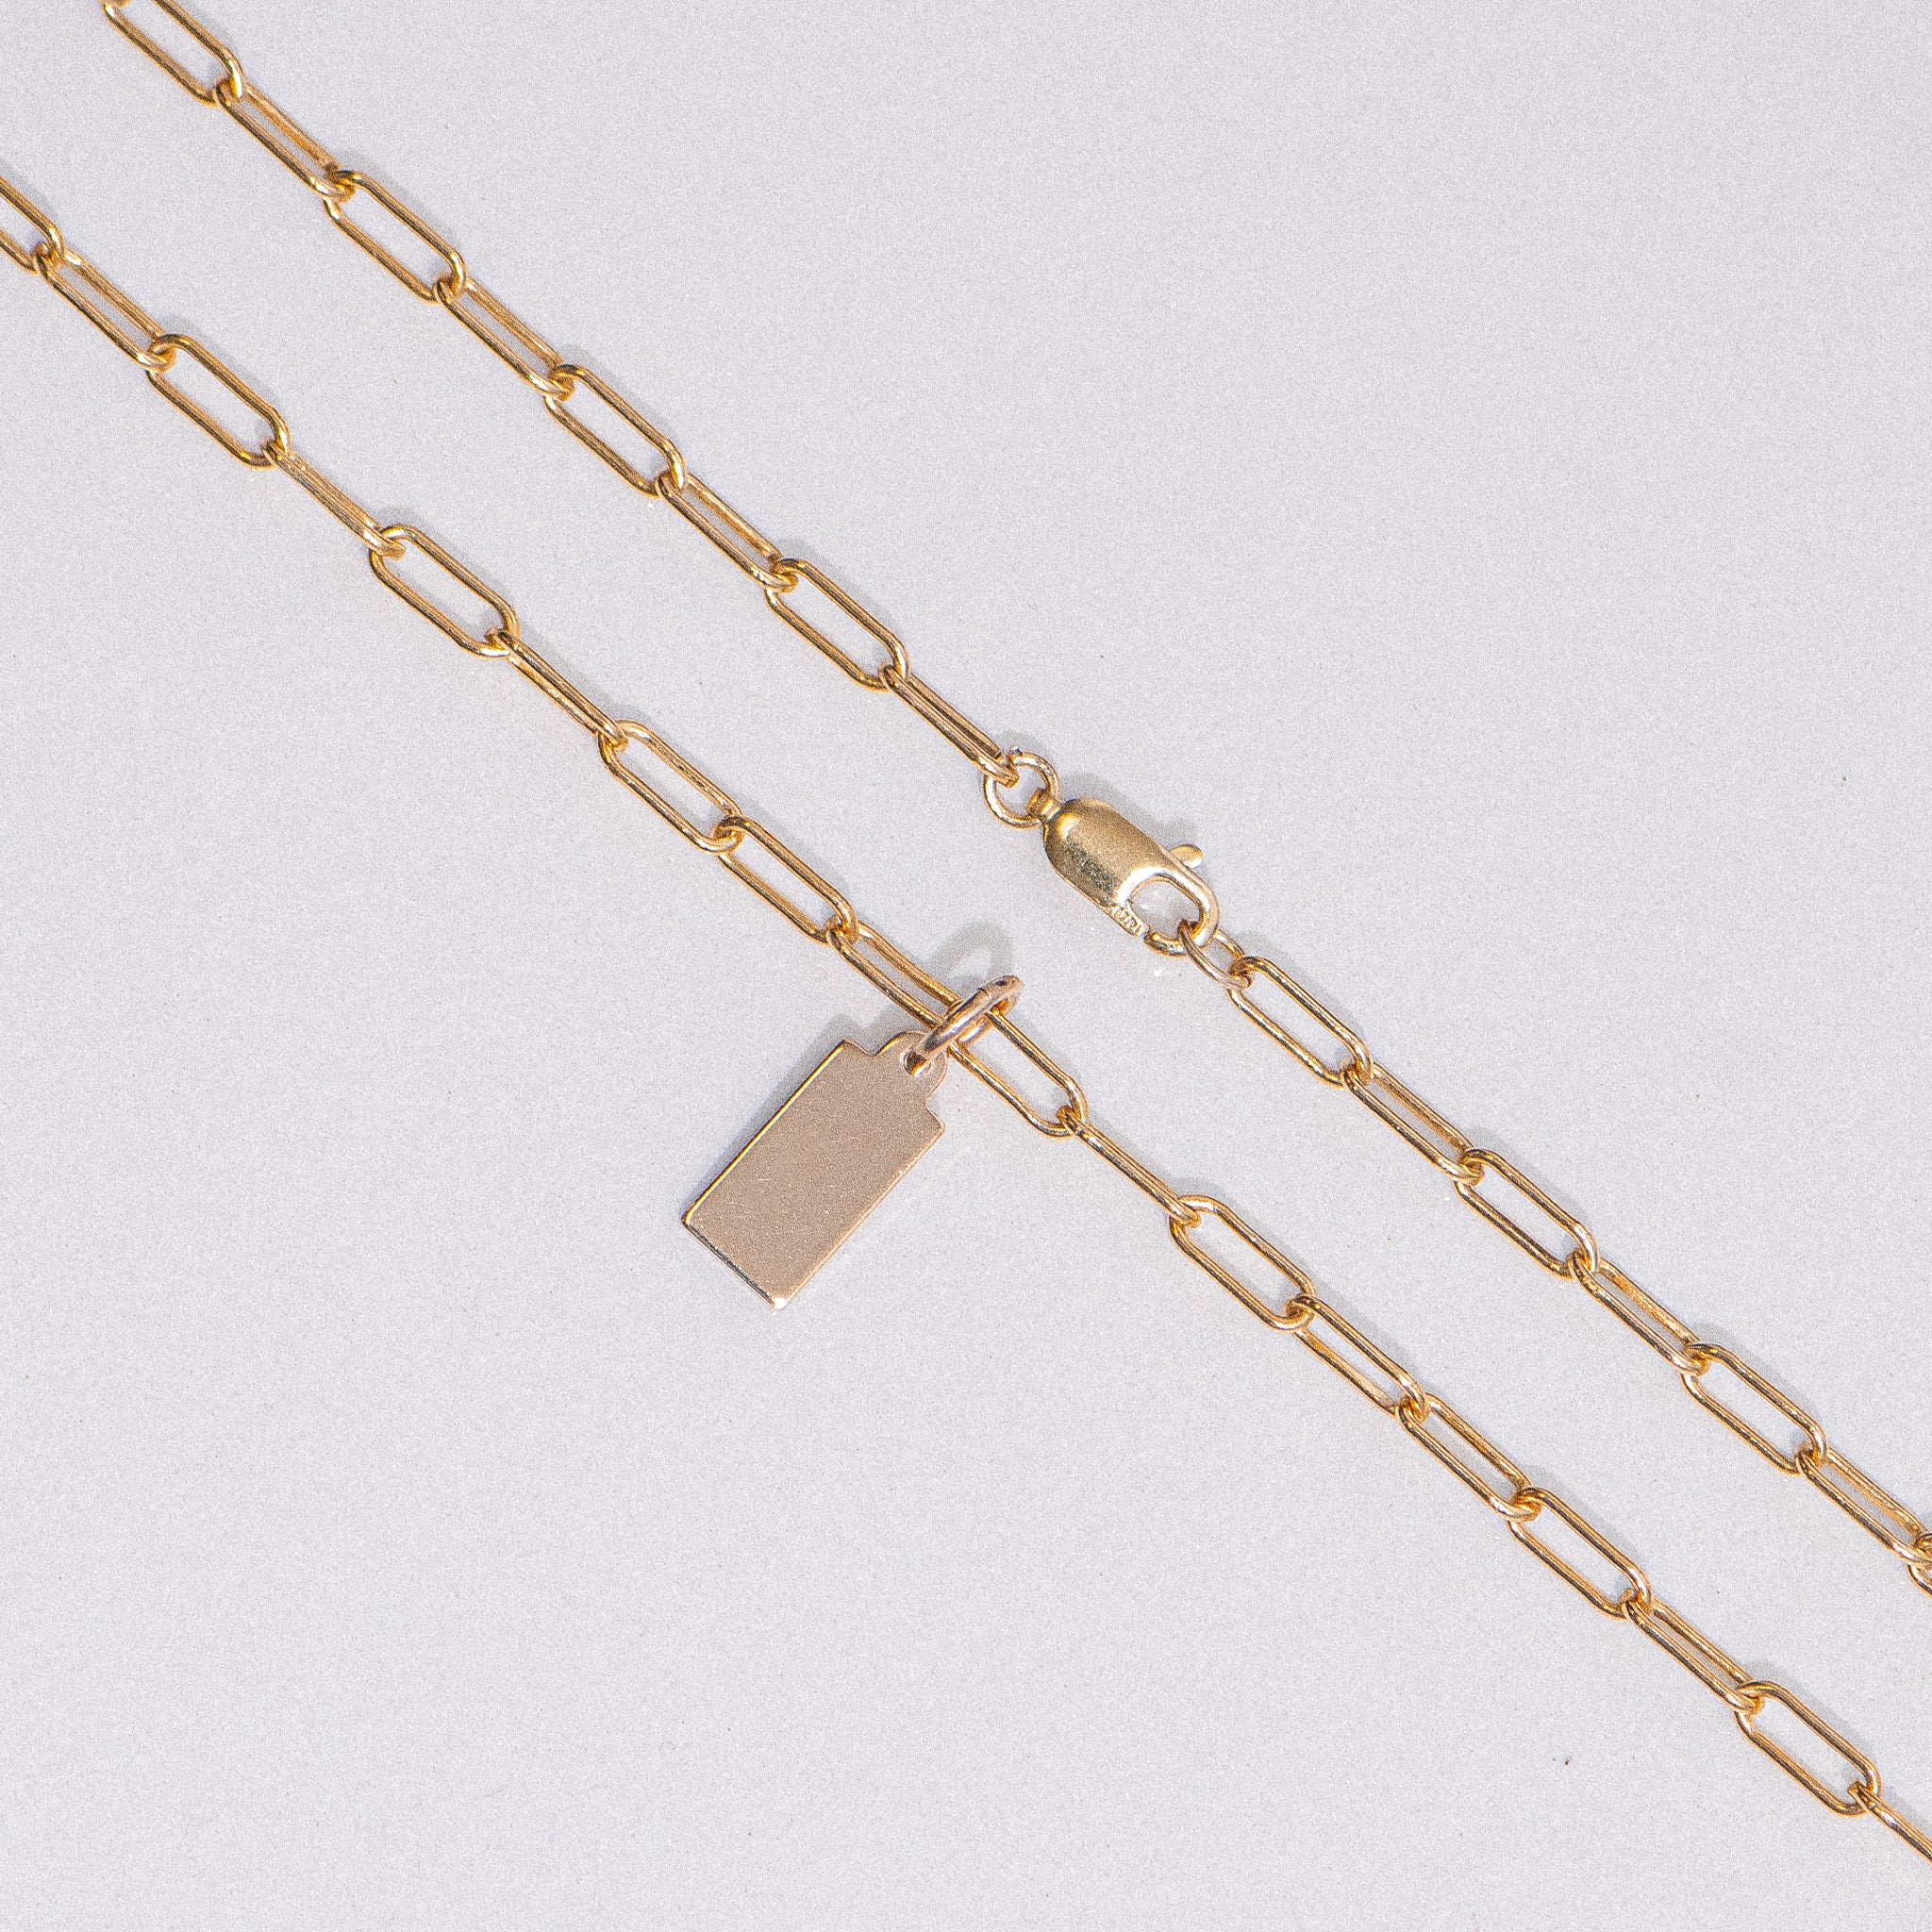 Tag Pendant Engraveable Clip Chain Necklace